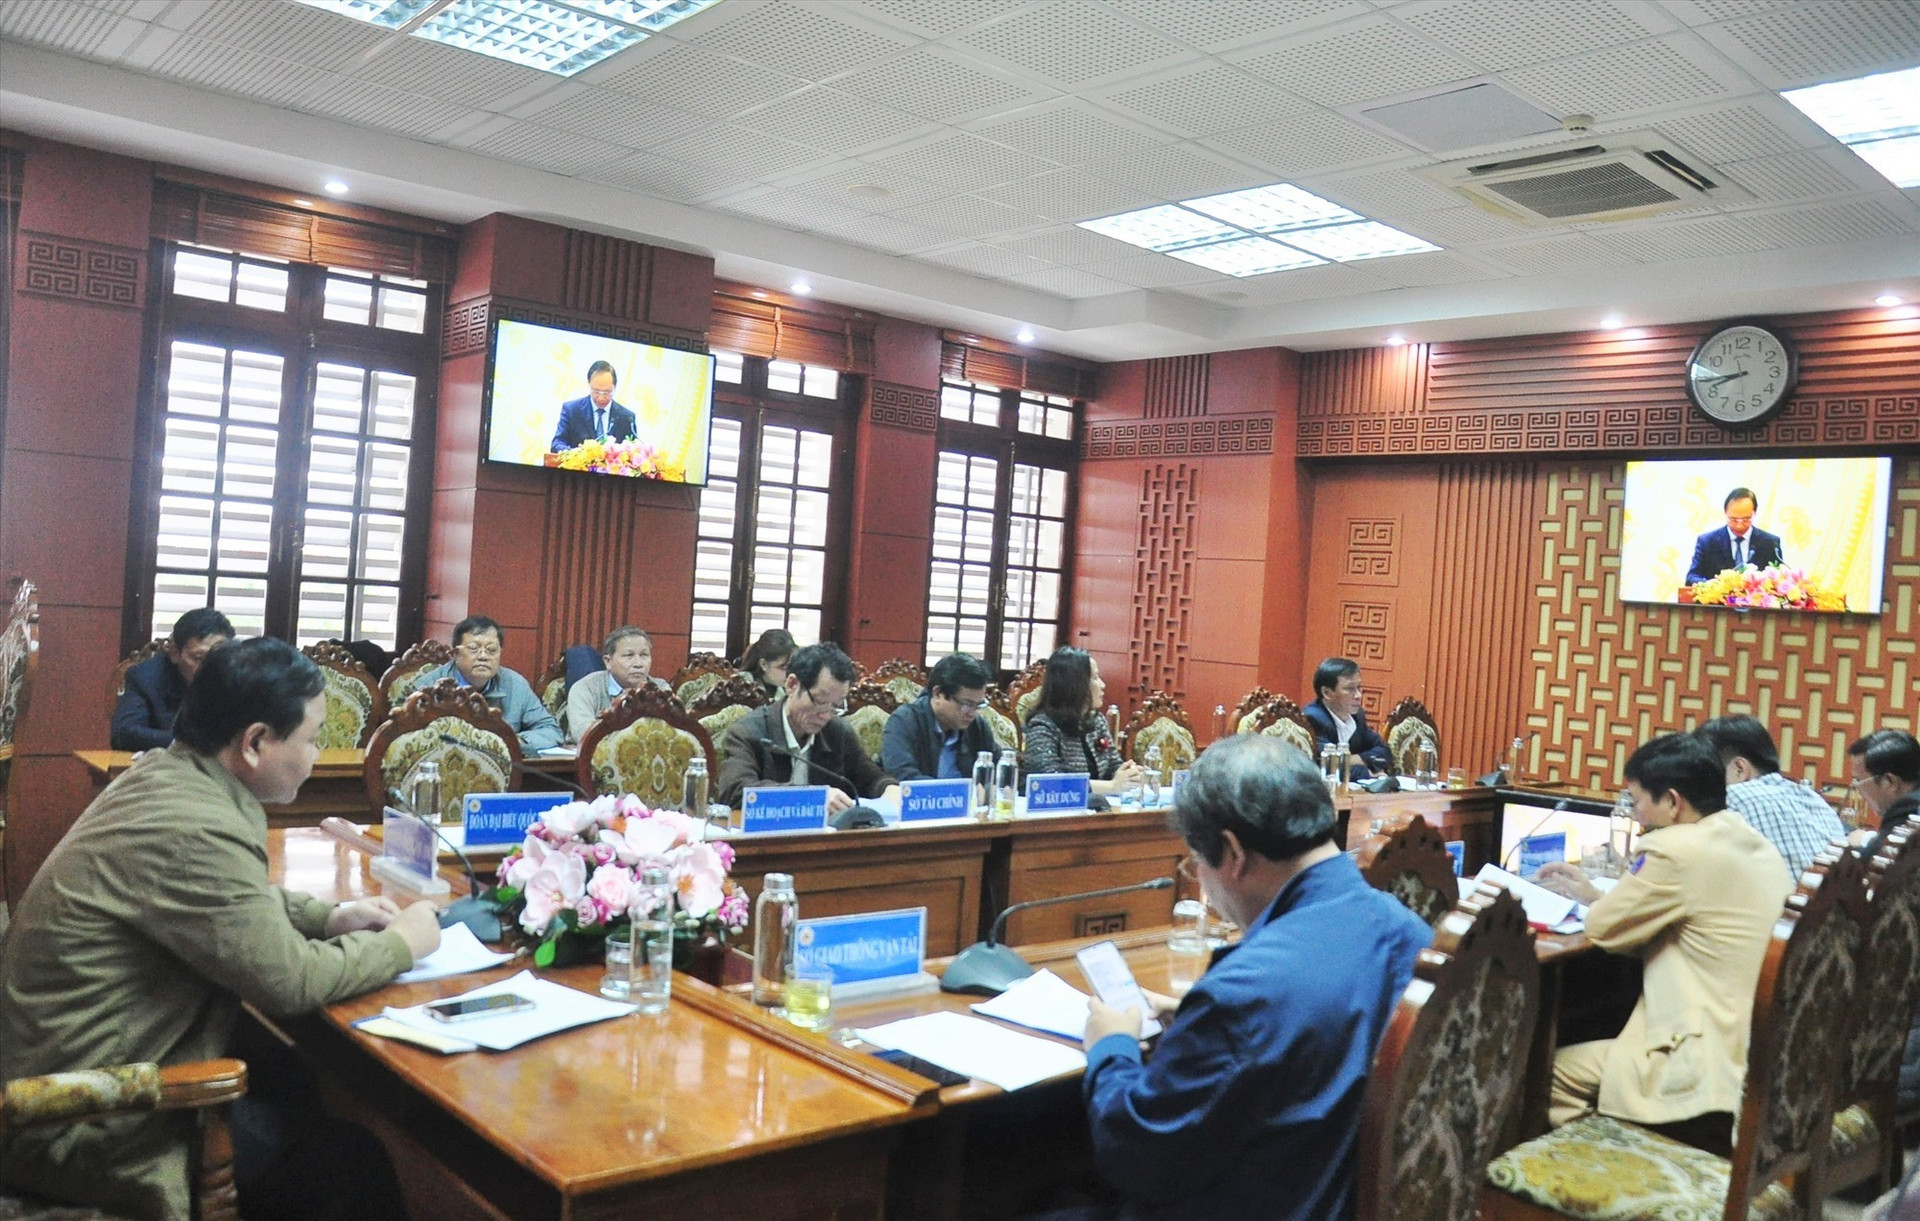 Phó Chủ tịch UBND tỉnh Nguyễn Hồng Quang chủ trì hội nghị tại điểm cầu Quảng Nam. Ảnh: VINH ANH